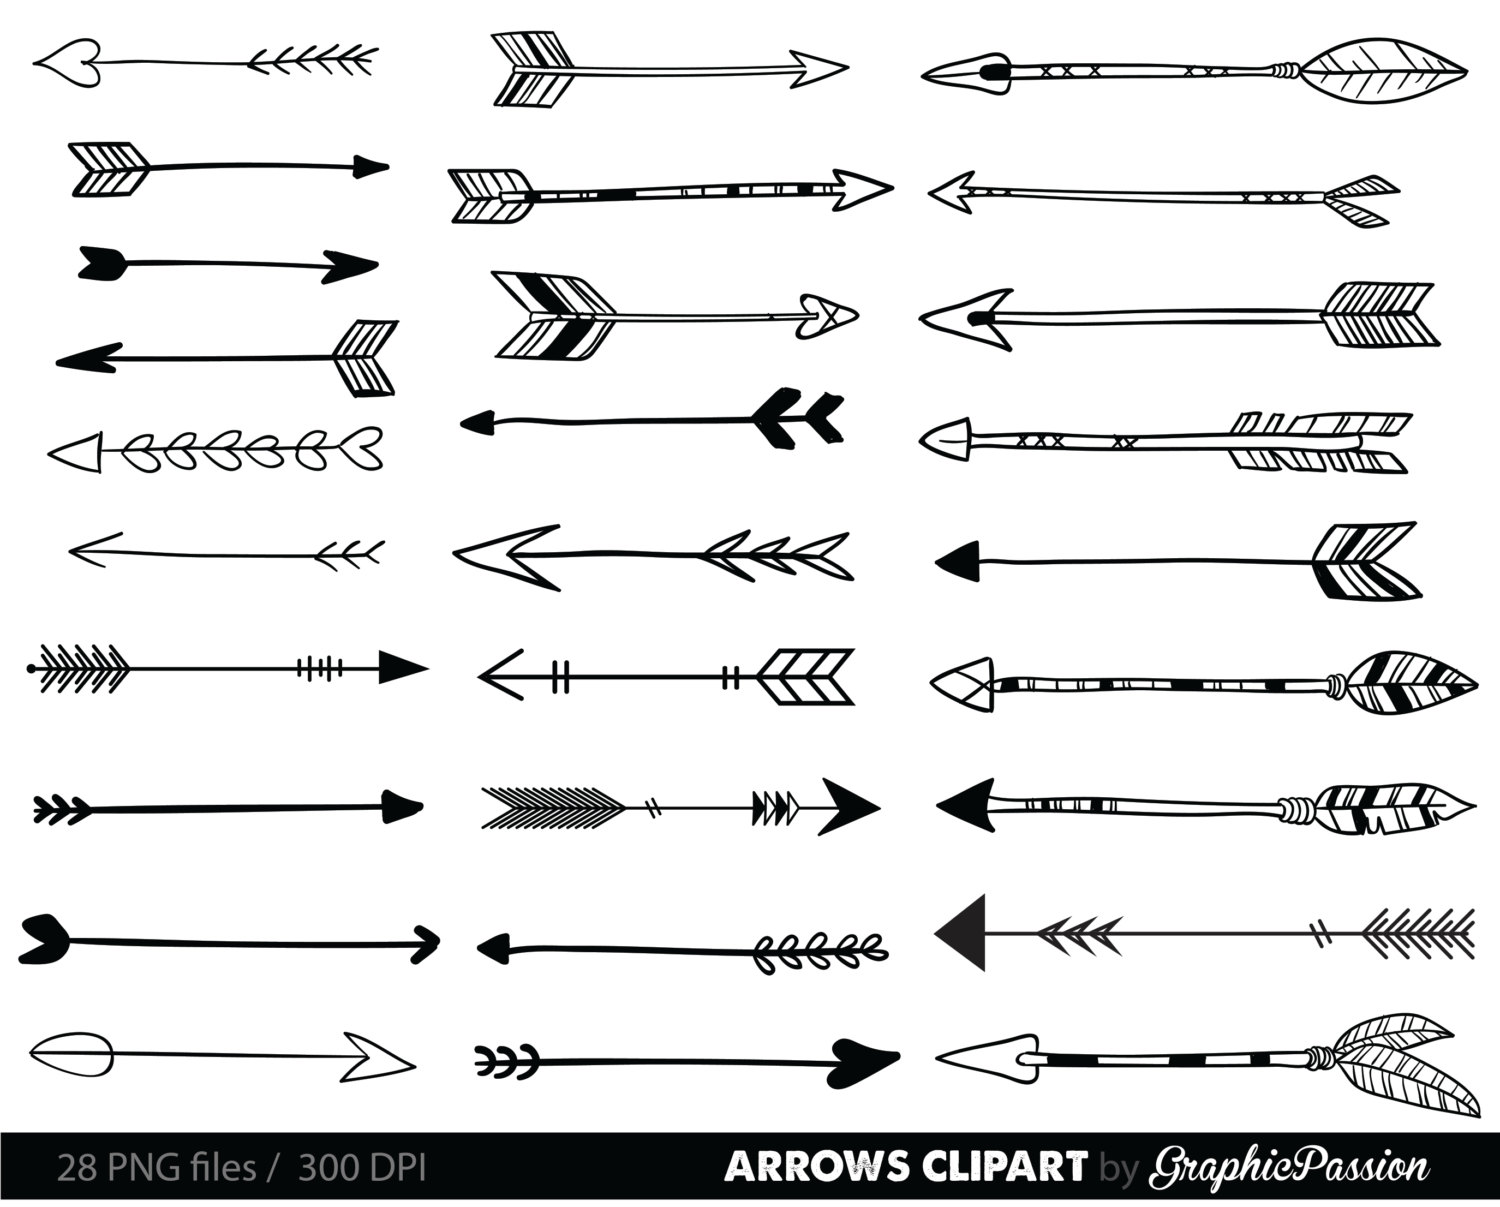 ????zoom - Arrows Clipart